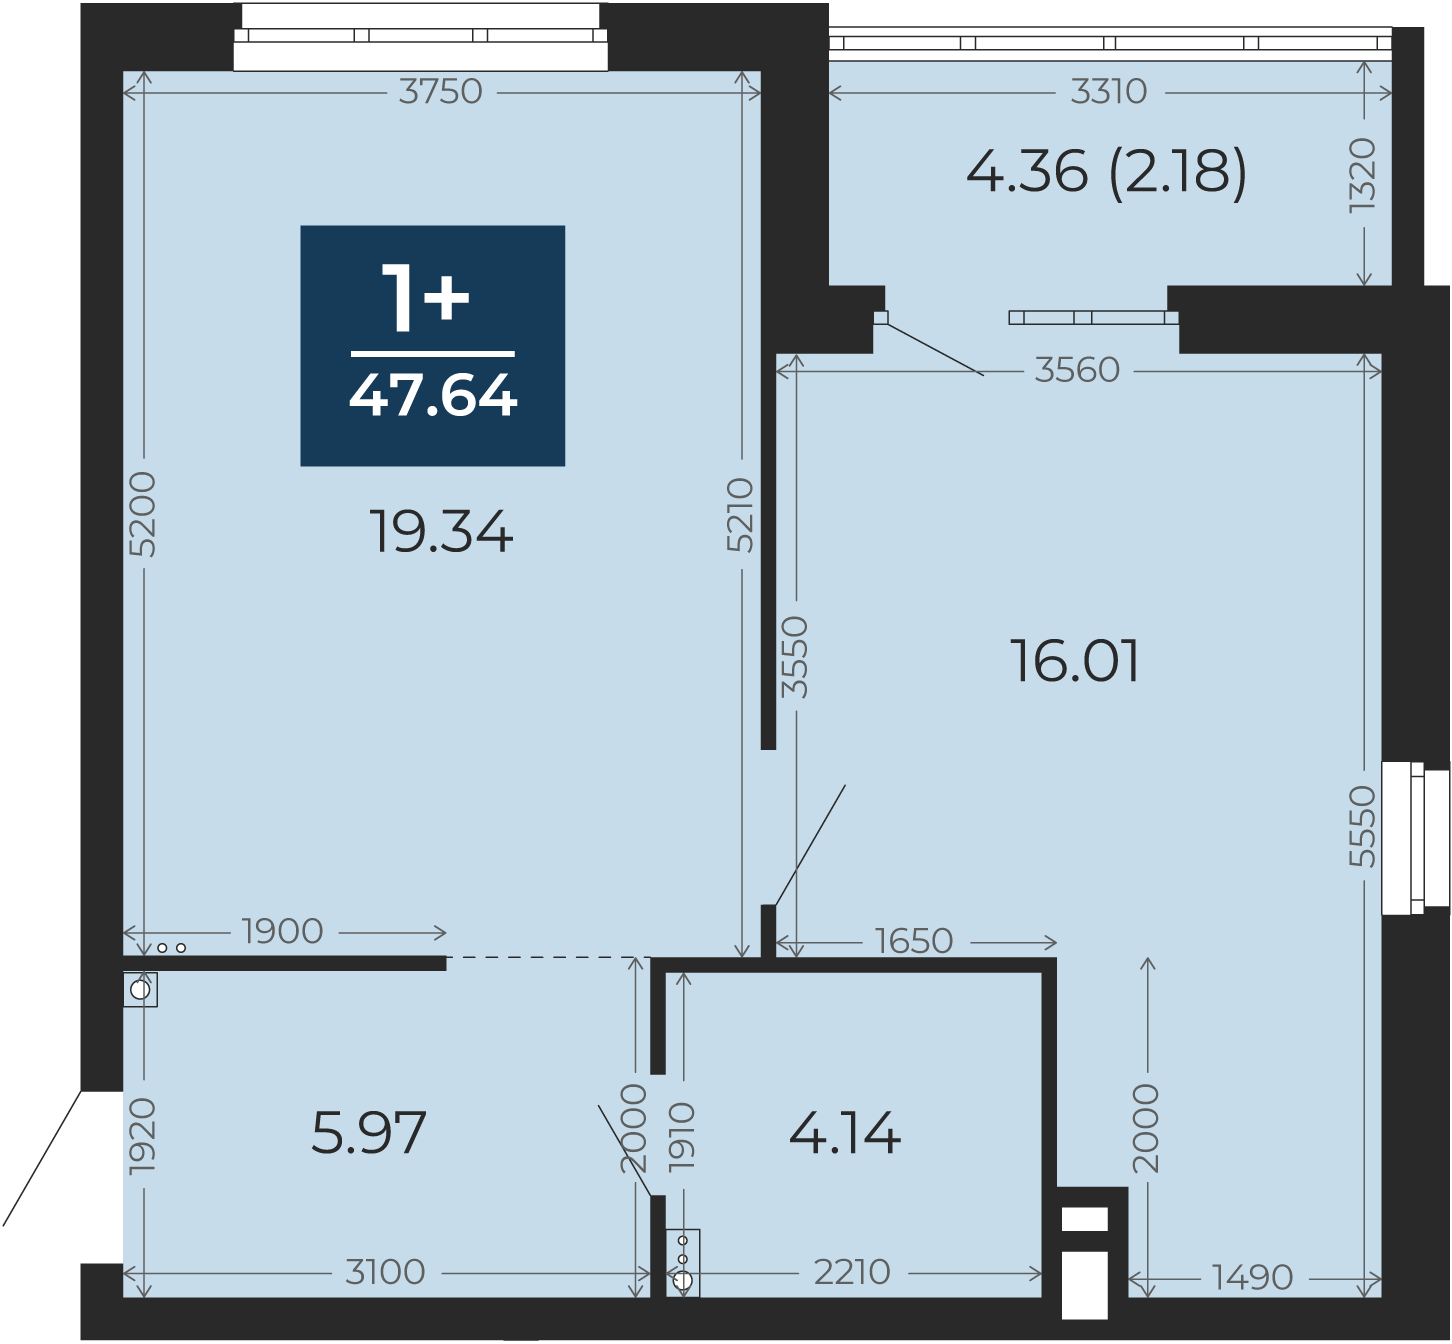 Квартира № 299, 1-комнатная, 47.64 кв. м, 3 этаж